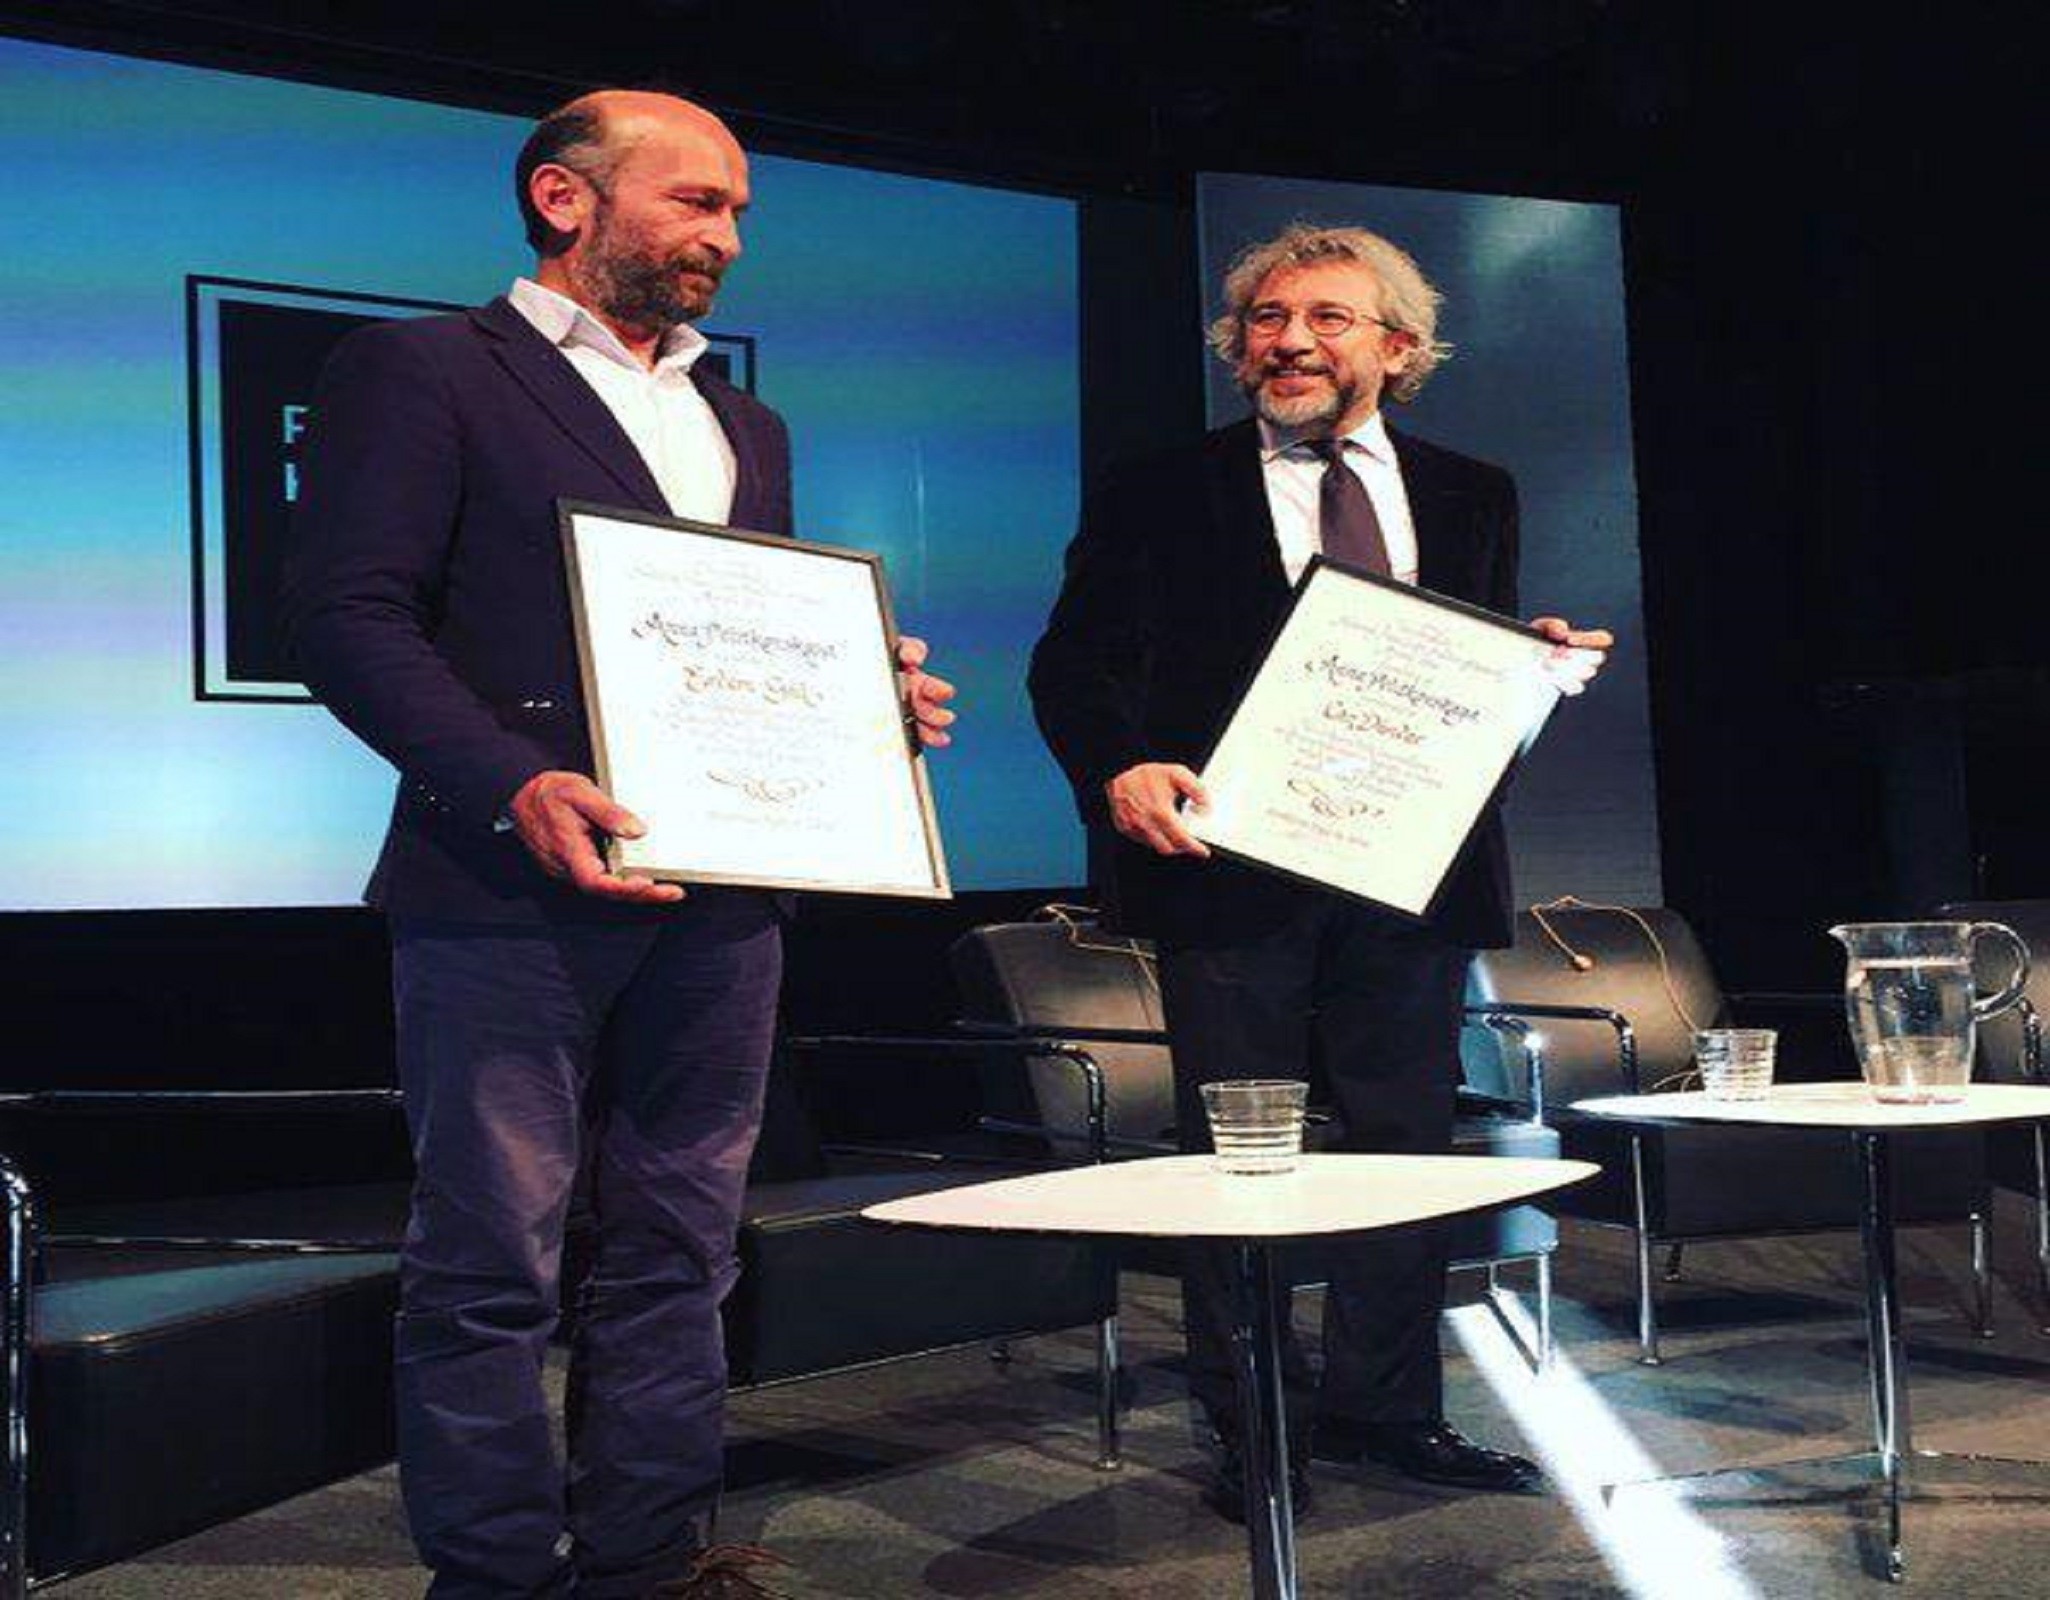 İsveç’te Can Dündar ve Erdem Gül’e Fikir Özgürlüğü Ödülü